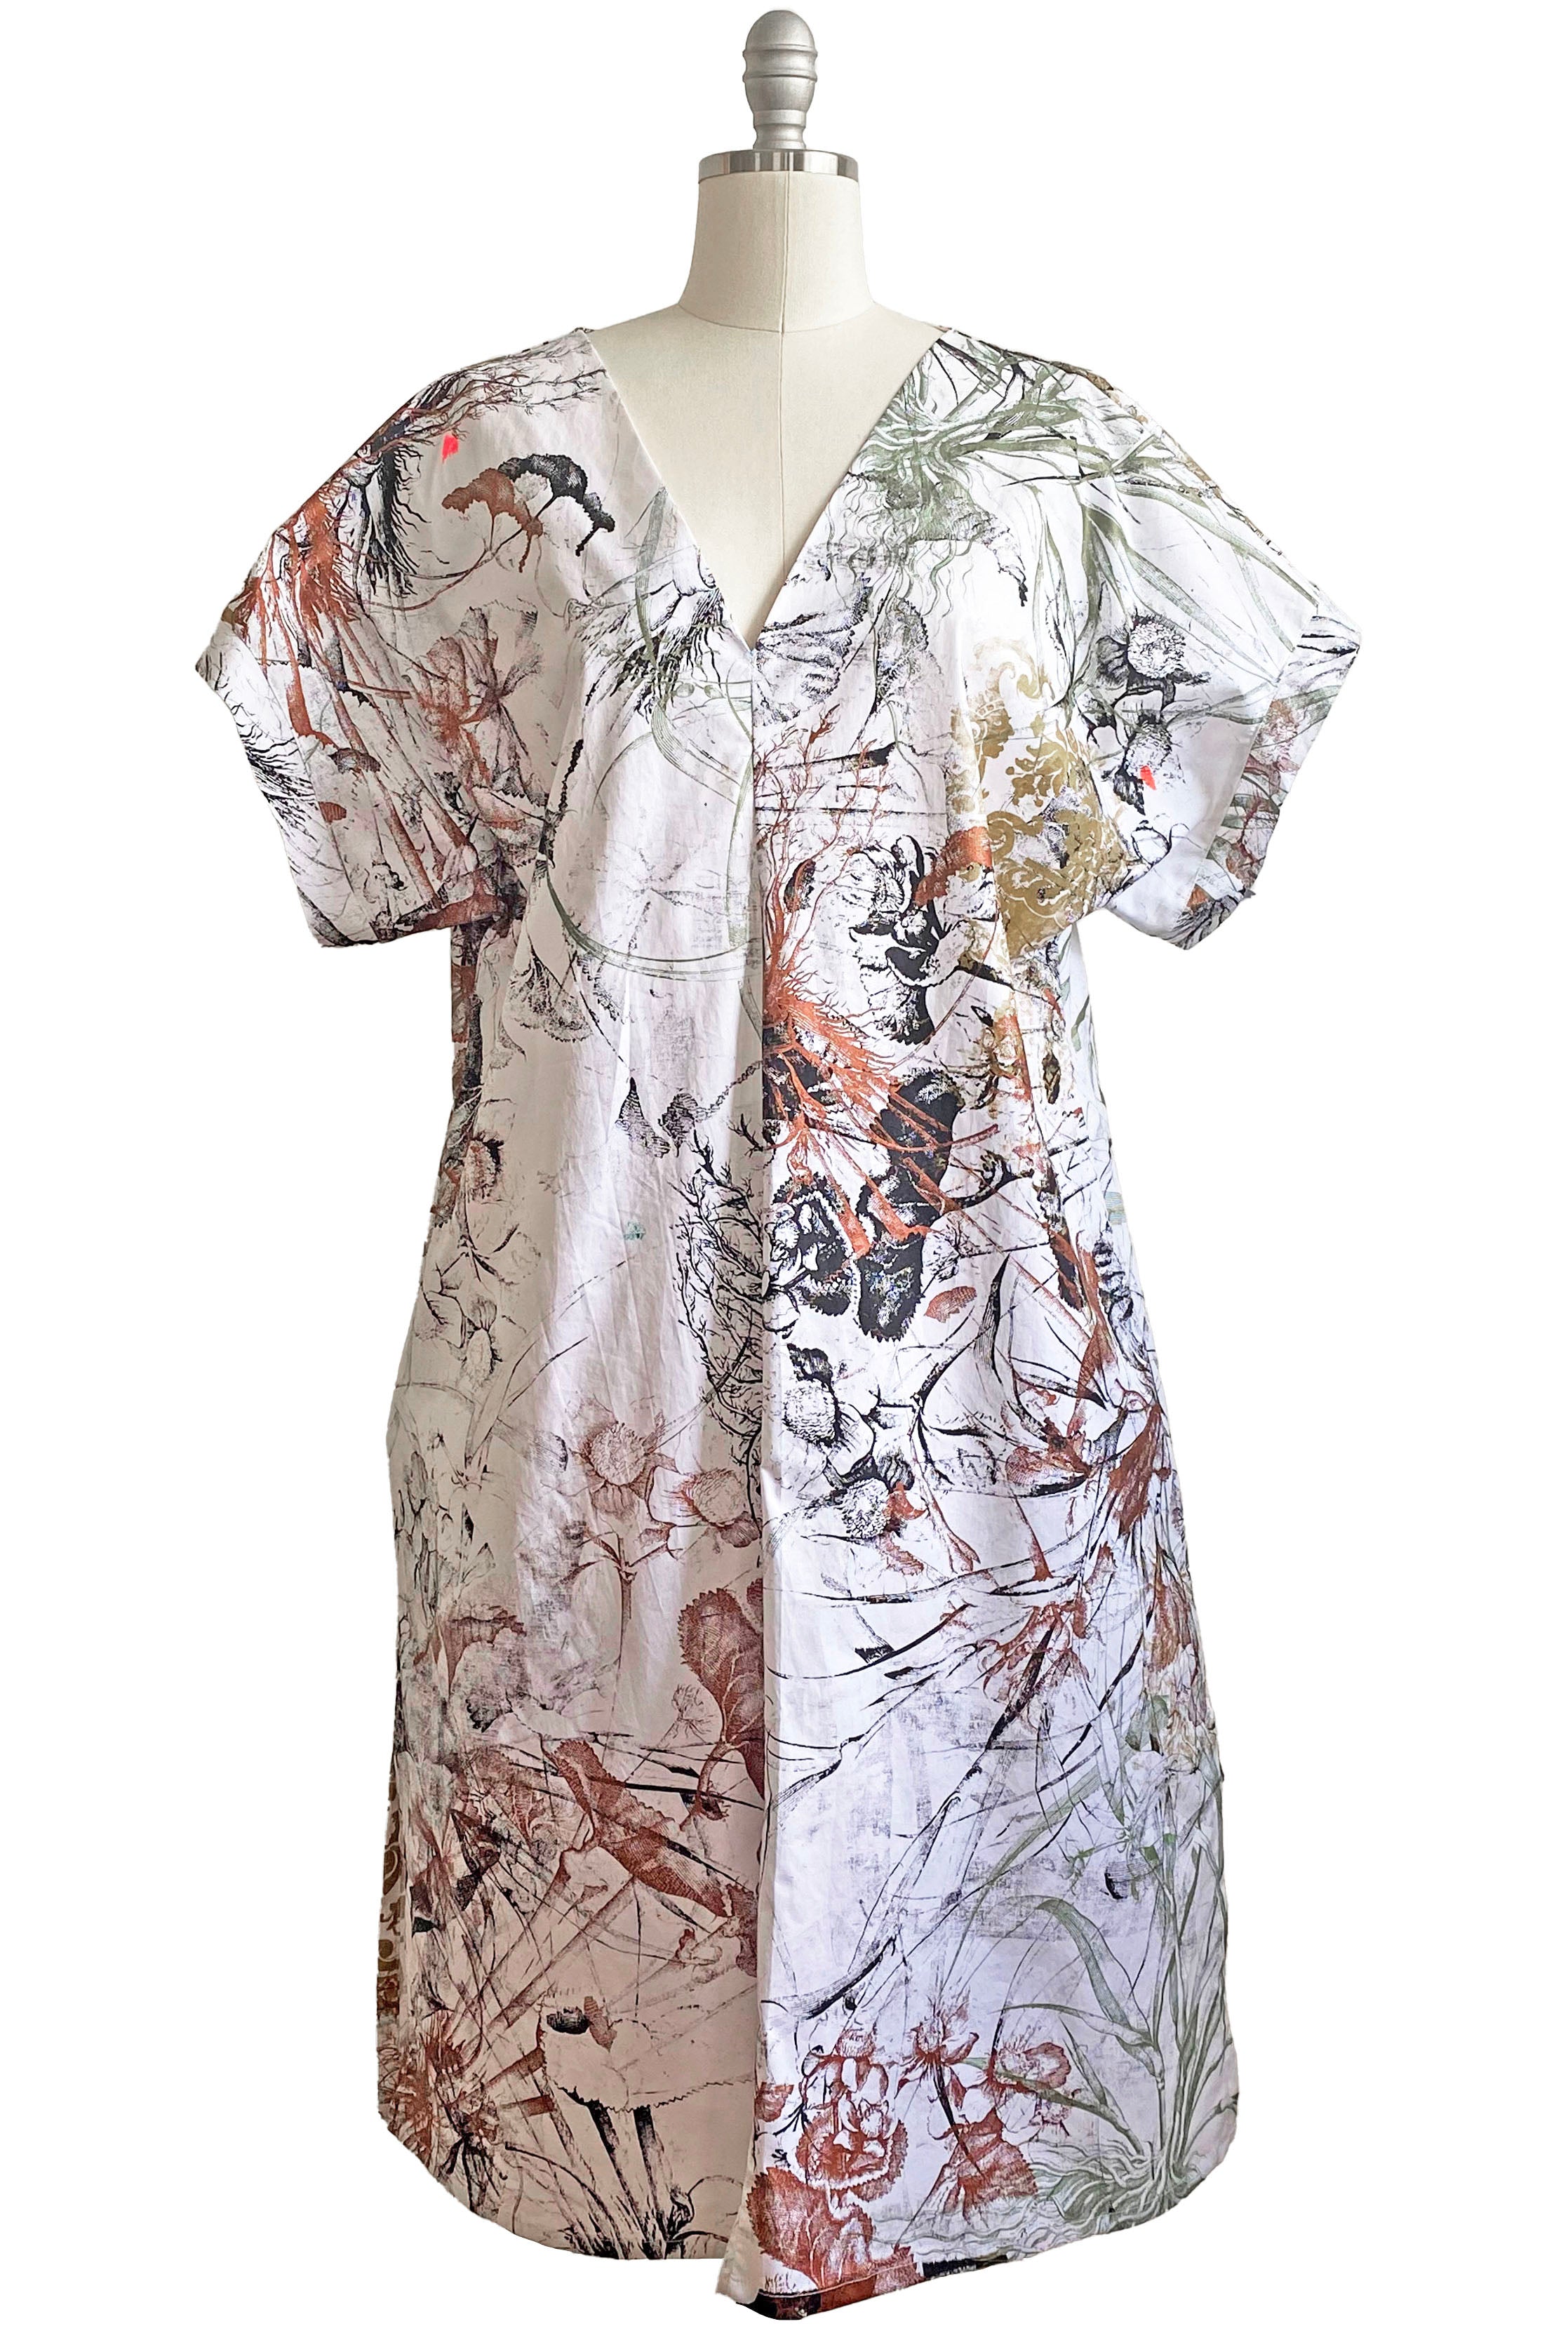 Short Sleeve Kaftan Dress - Marsh Garden Print - White - M/L